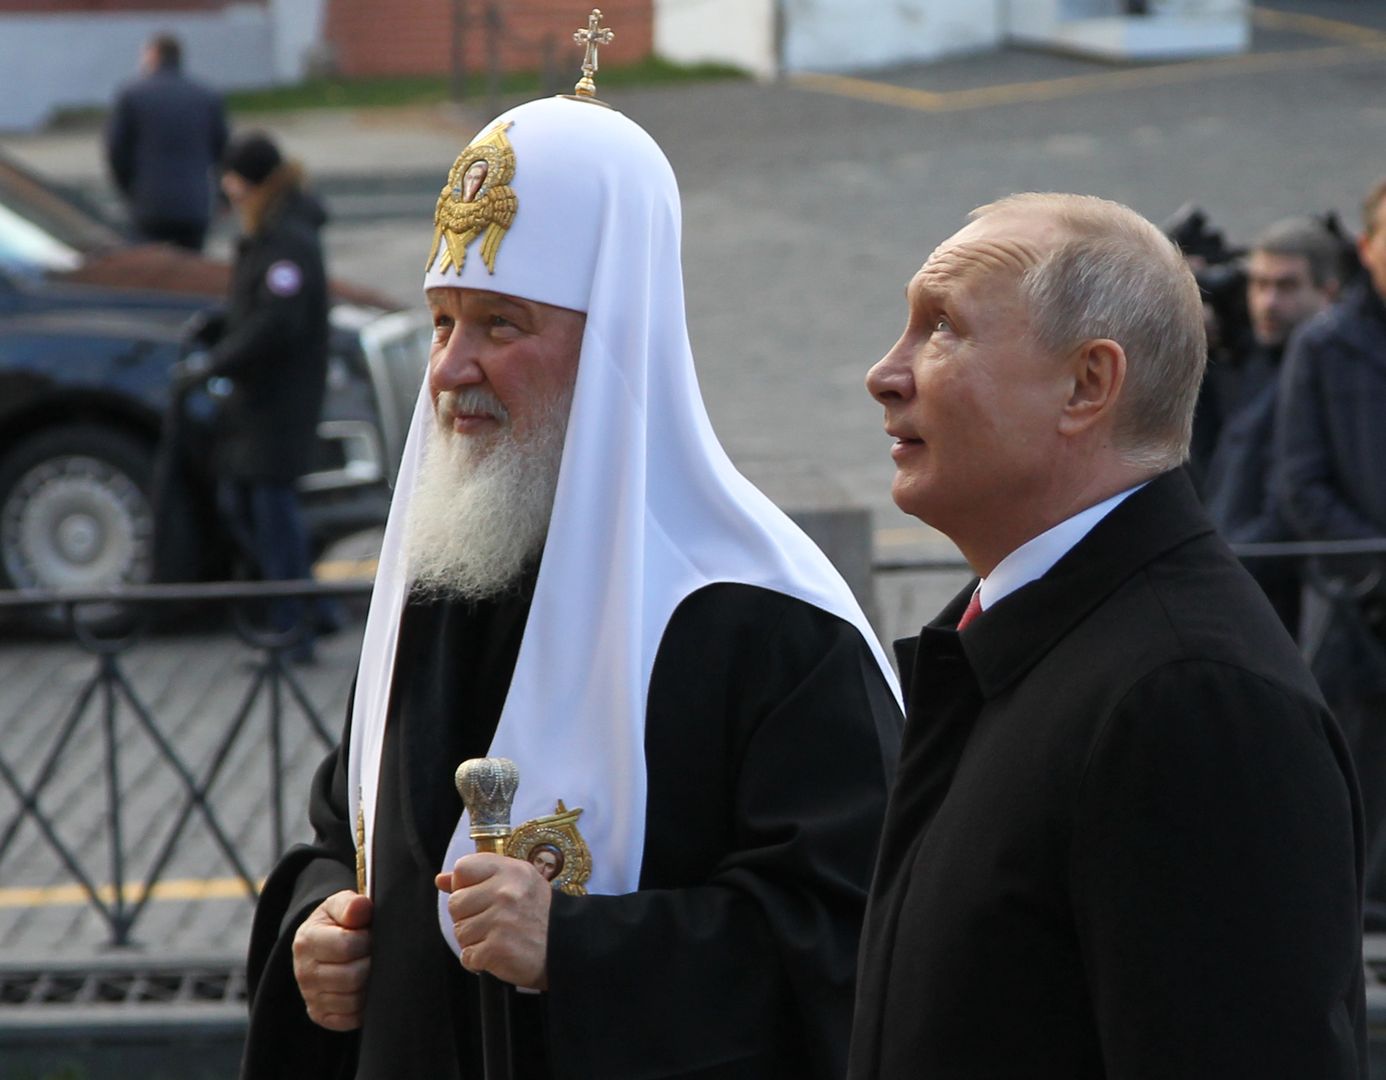 Ukraina zabierze majątek Cerkwi? Przyjaciel Putina wpadnie w furię